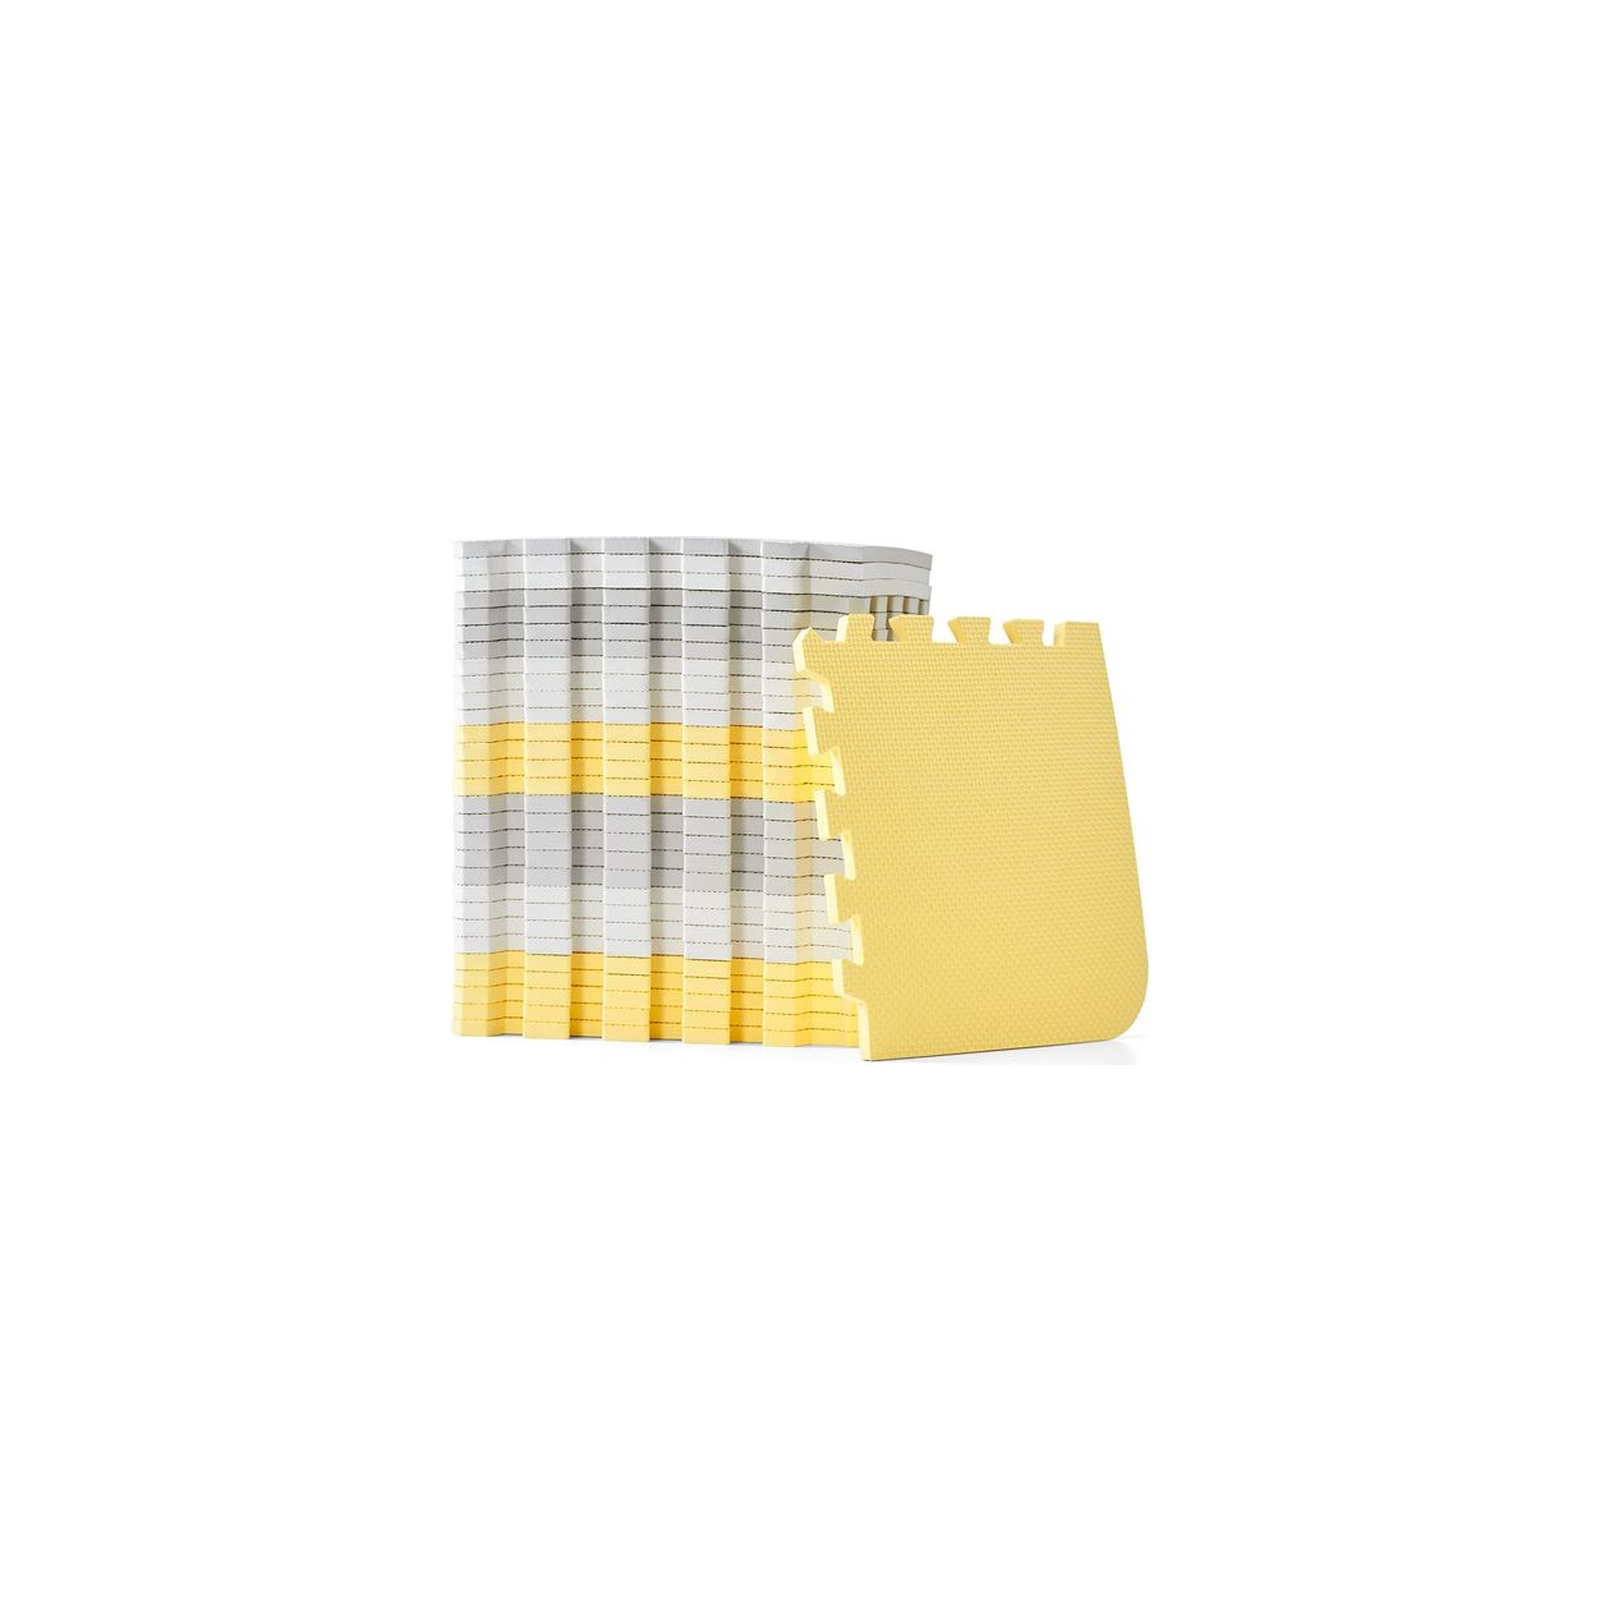 Детский коврик Kinderkraft пазл Luno Yellow, 30 элементов (5902533913602) изображение 3